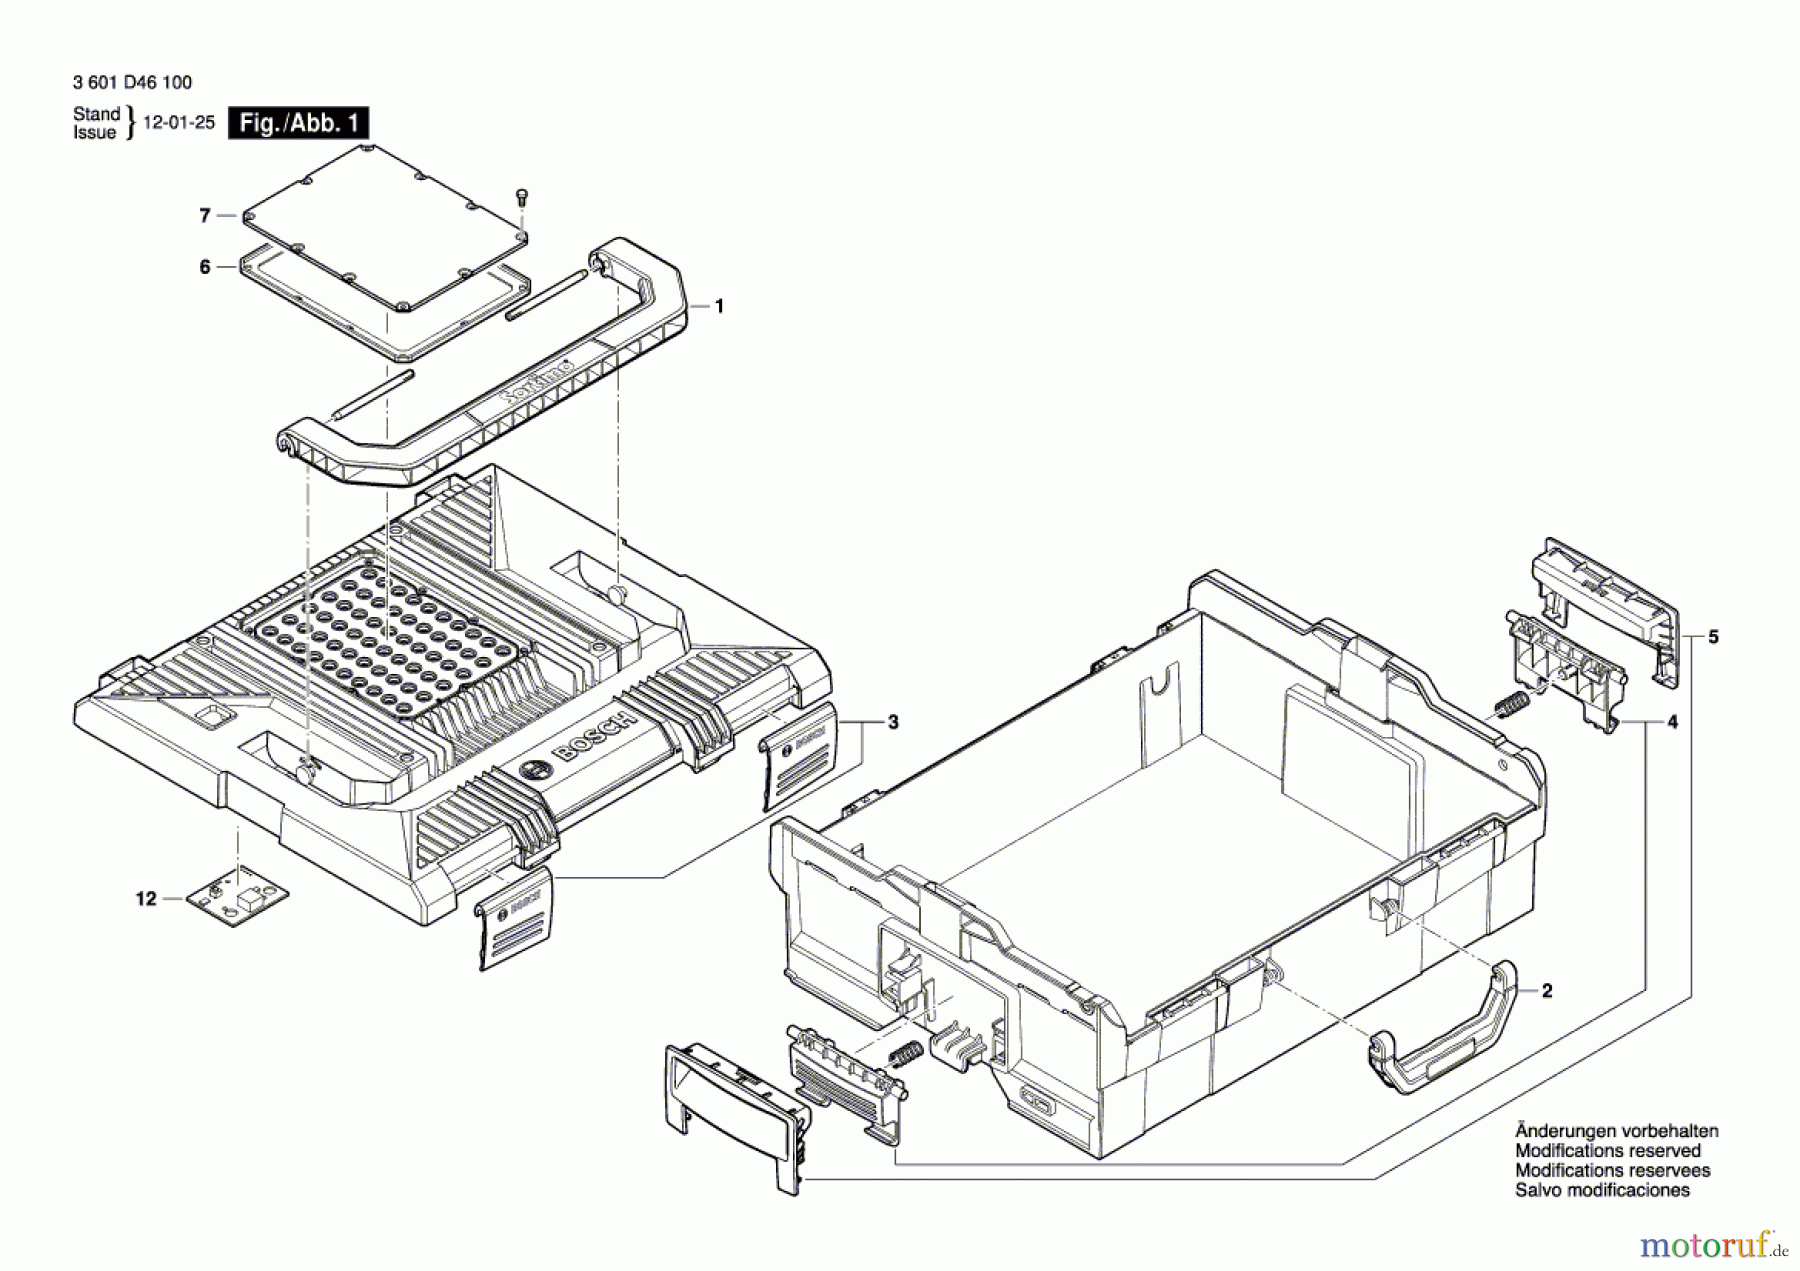  Bosch Werkzeug Lampenkasten GLI PortaLED Seite 1